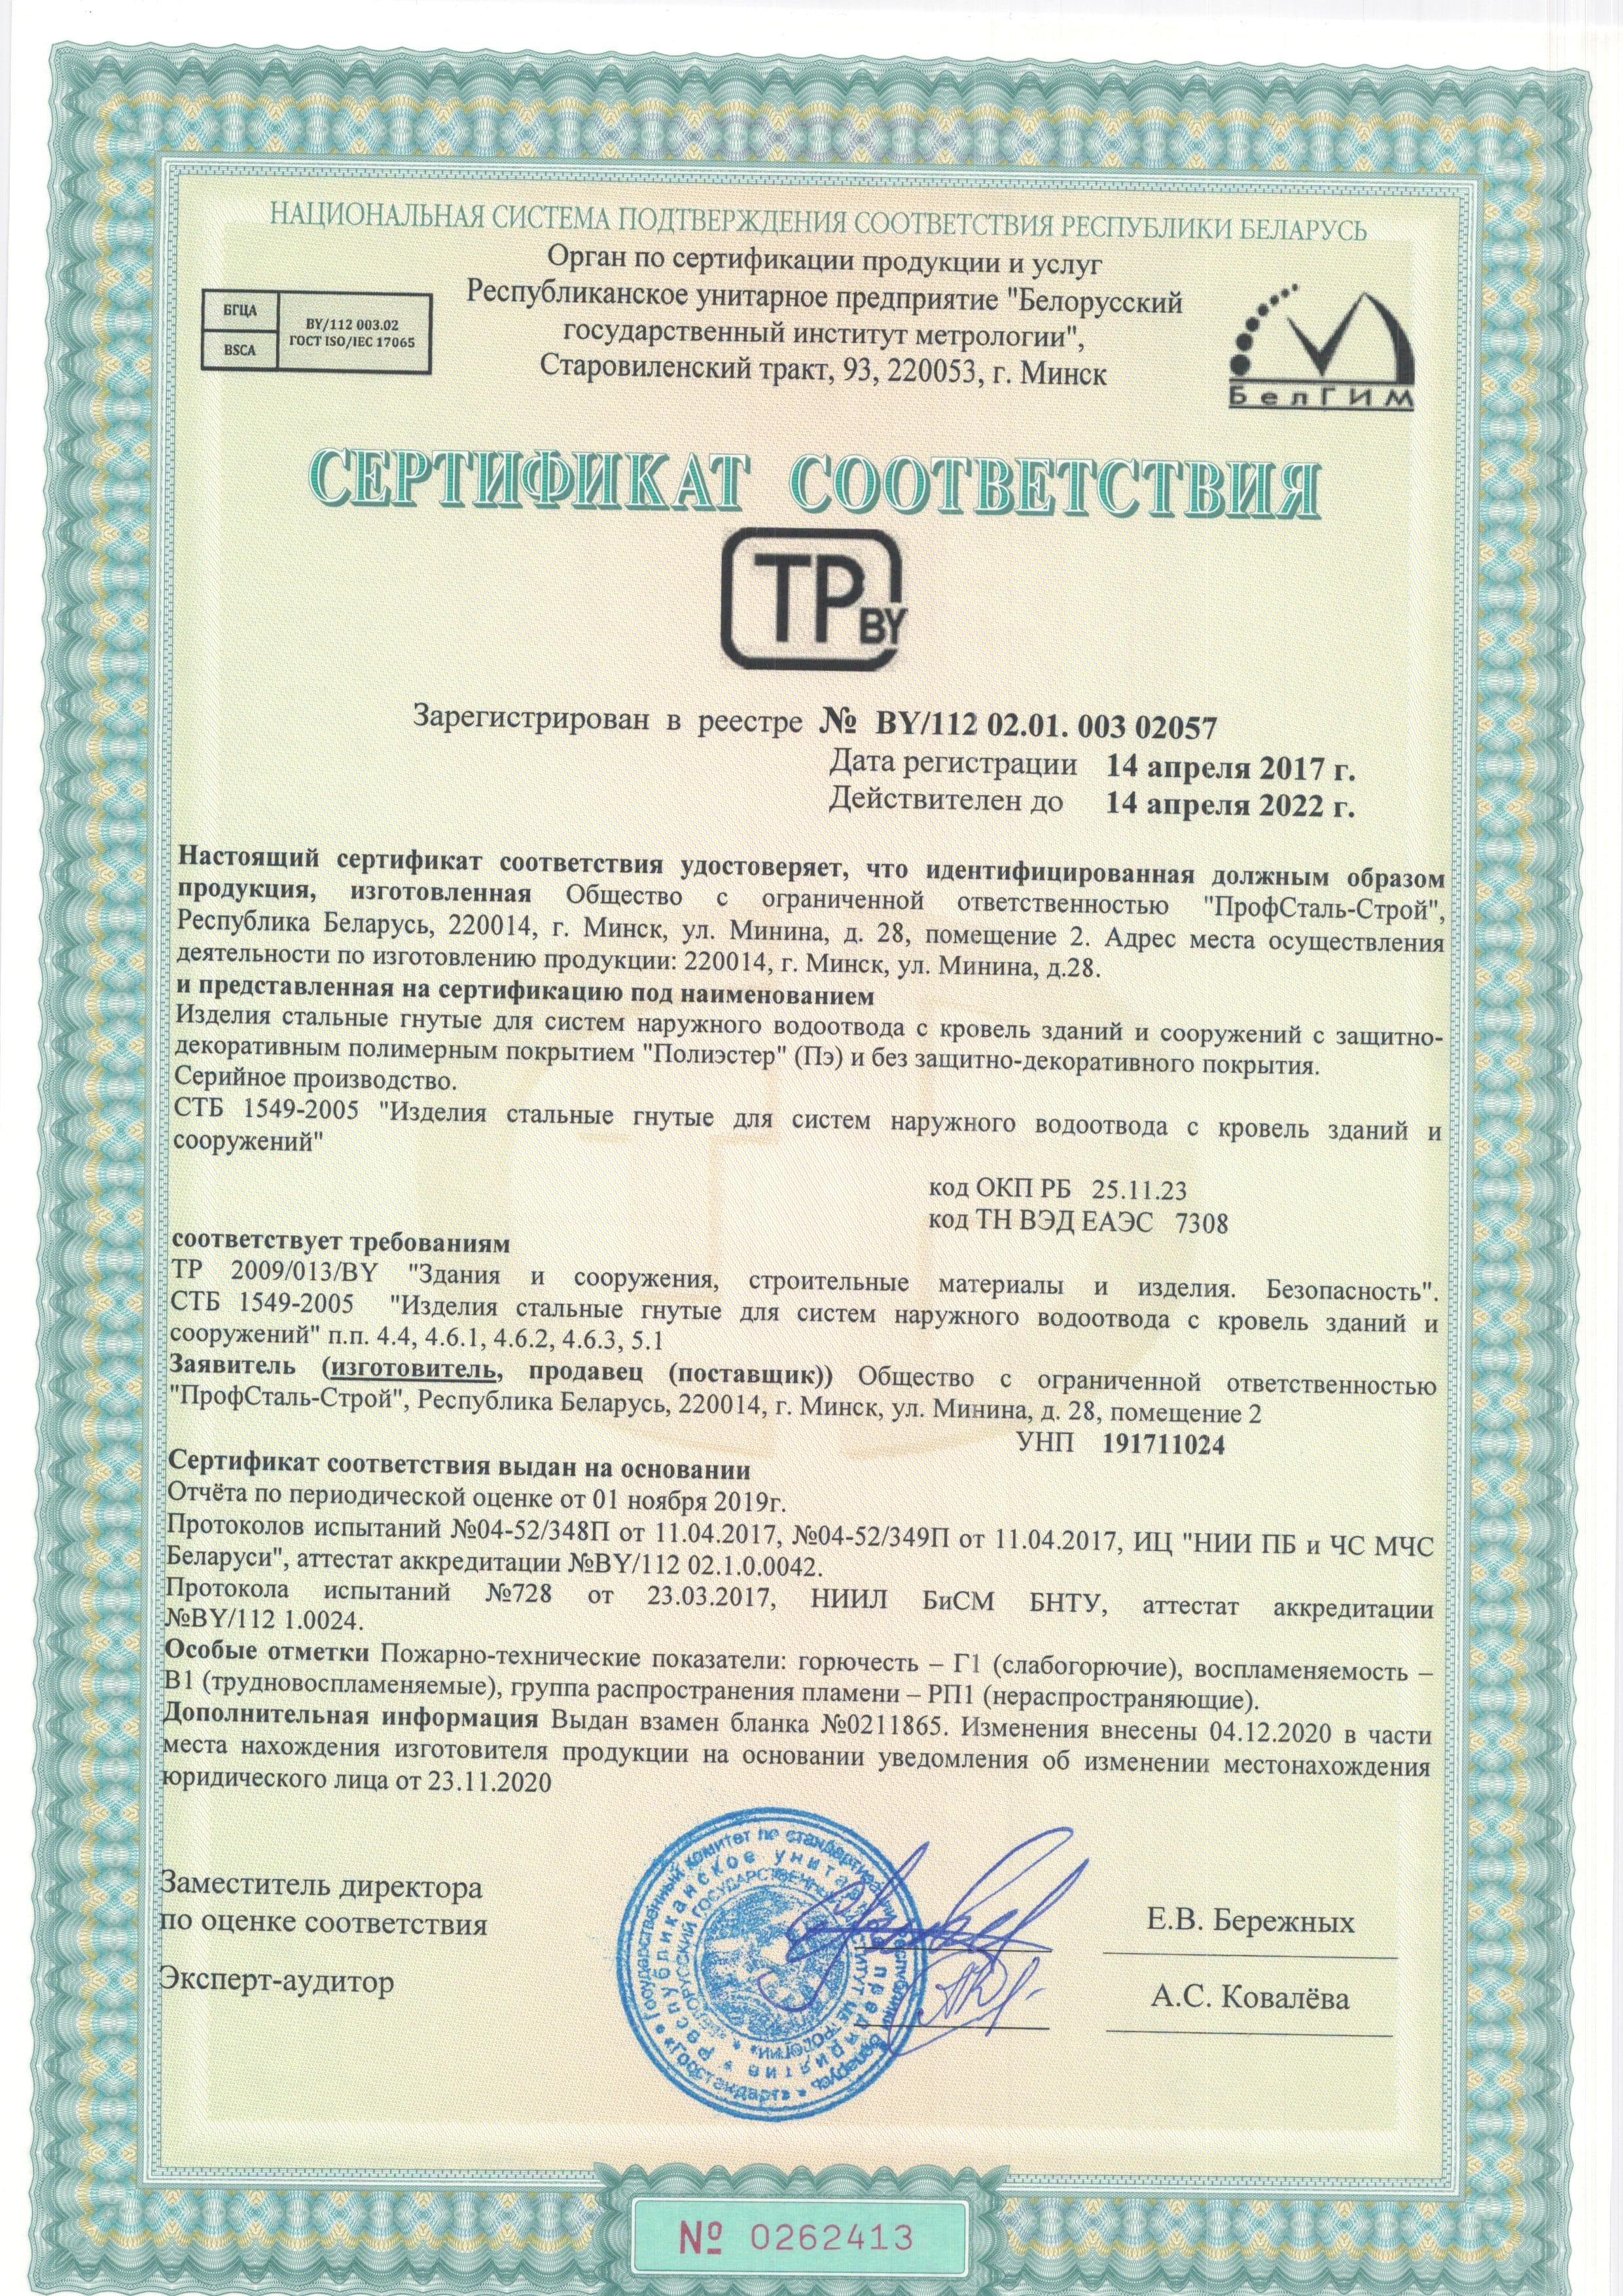 Сертификат соответствия изделия стальные гнутые для систем наружного водоотвода с кровель